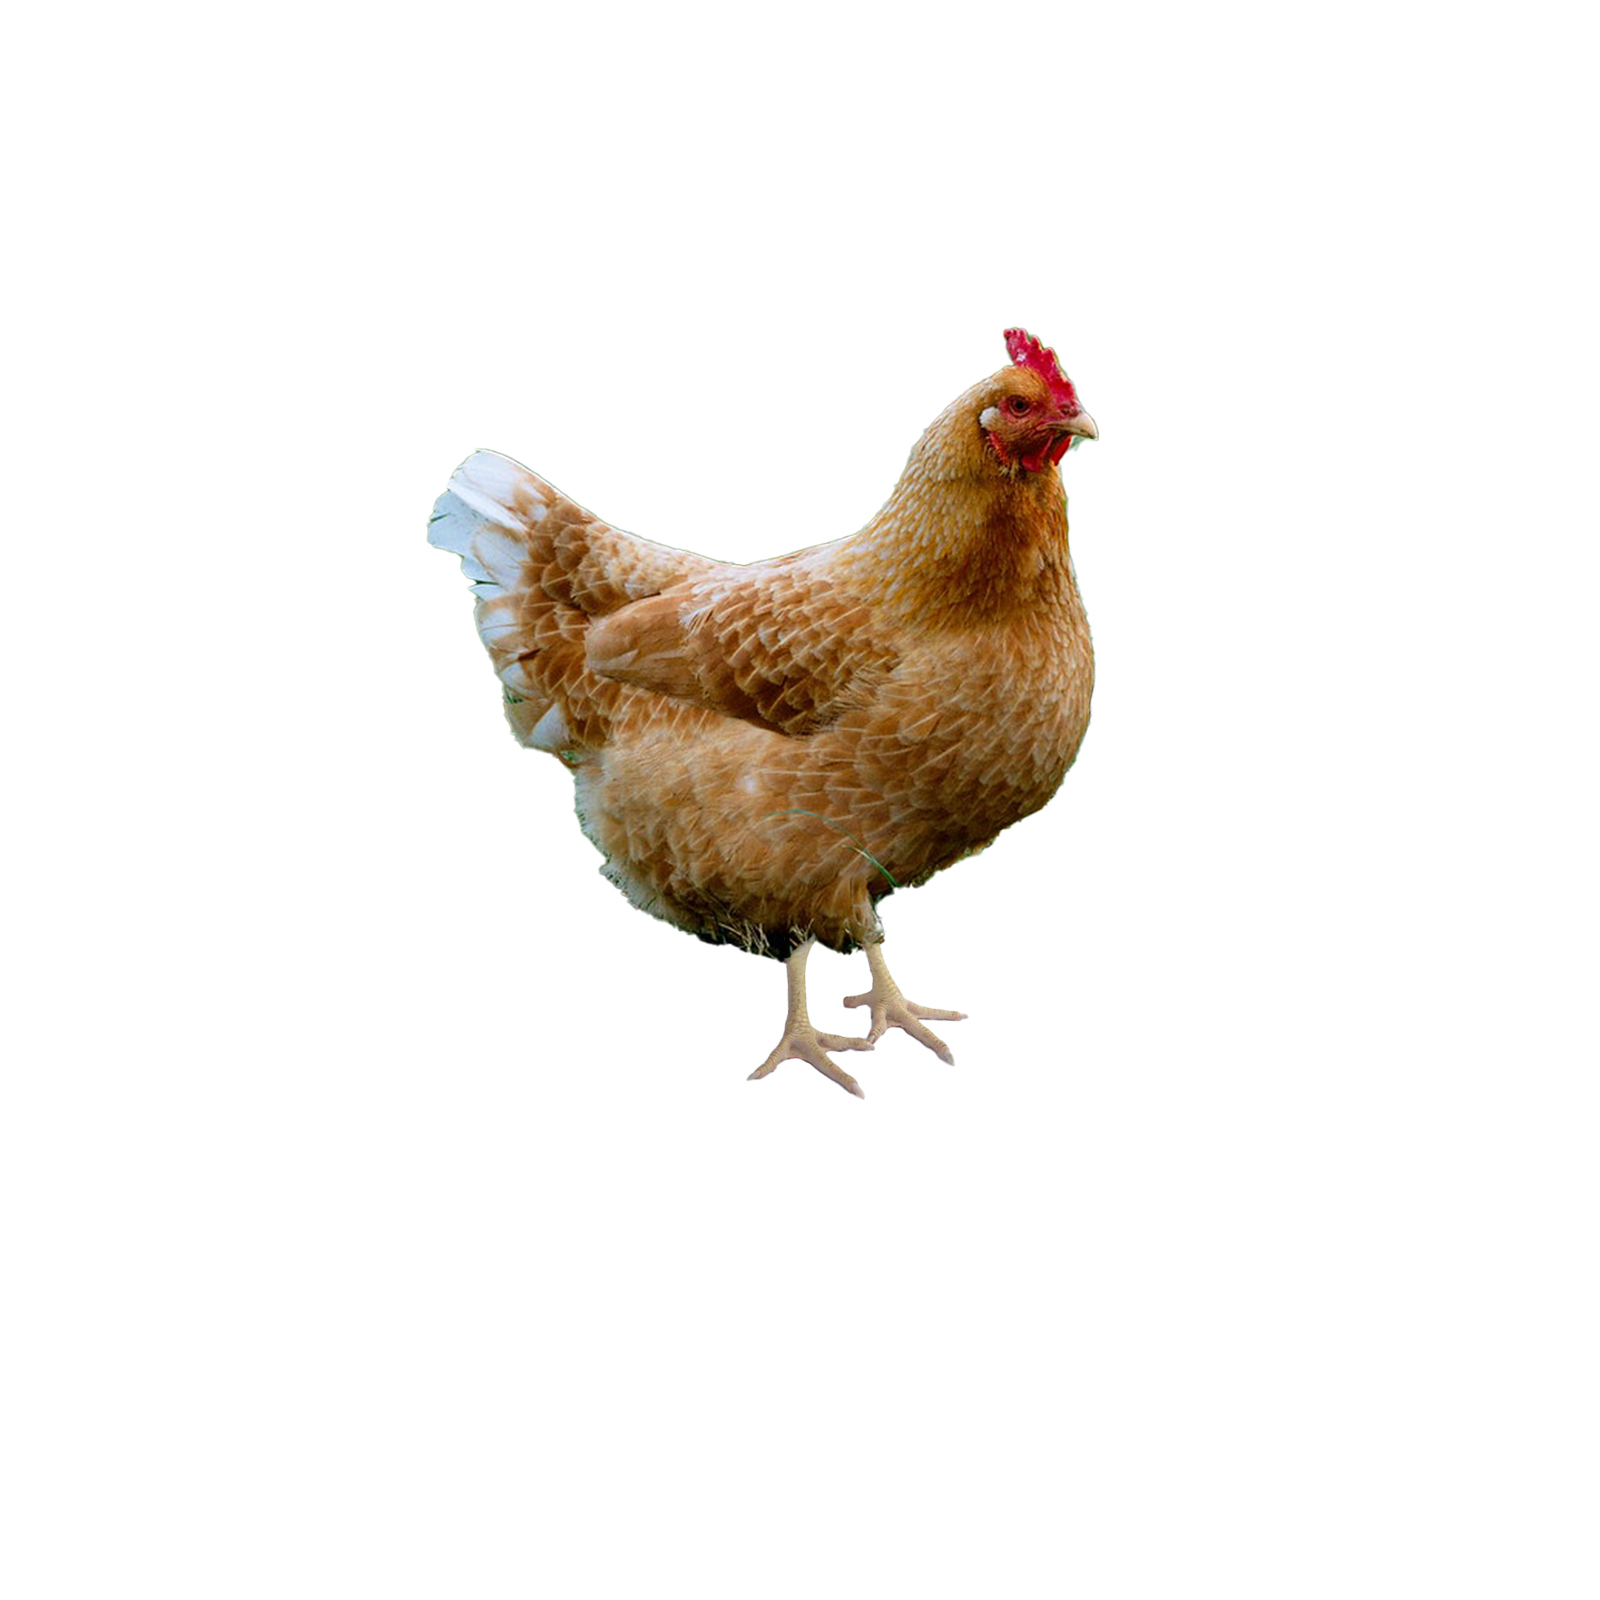 Free Range Chicken RM25/KG